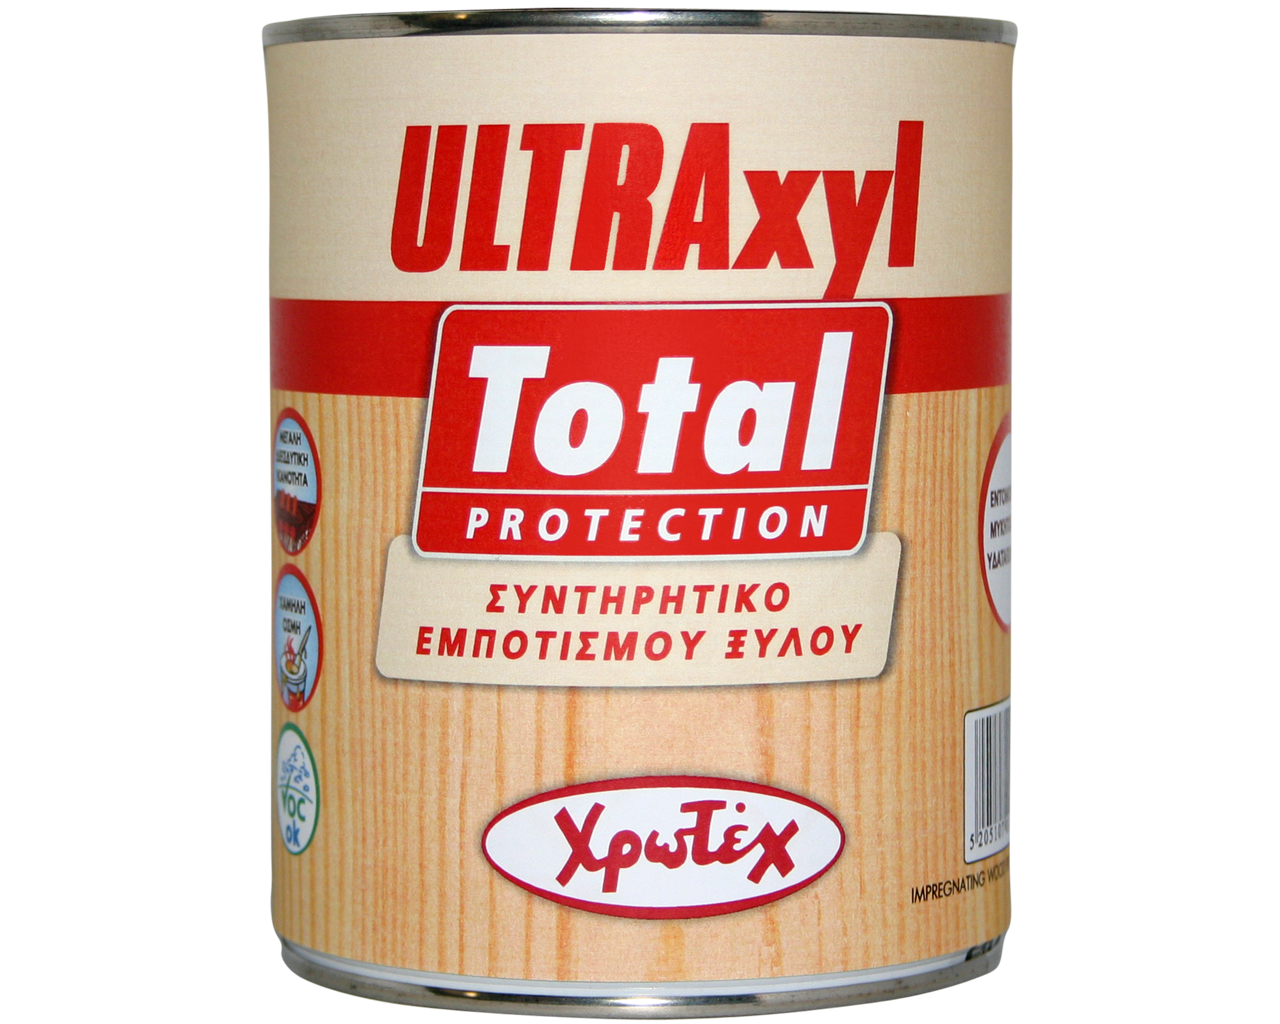 Χρωτέχ Ultraxyl Total Συντηρητικό Πρόληψης και Θεραπείας Ξύλου με Μυκητοκτόνες & Εντομοκτόνες Ιδιότητες Διάφανο 750ml